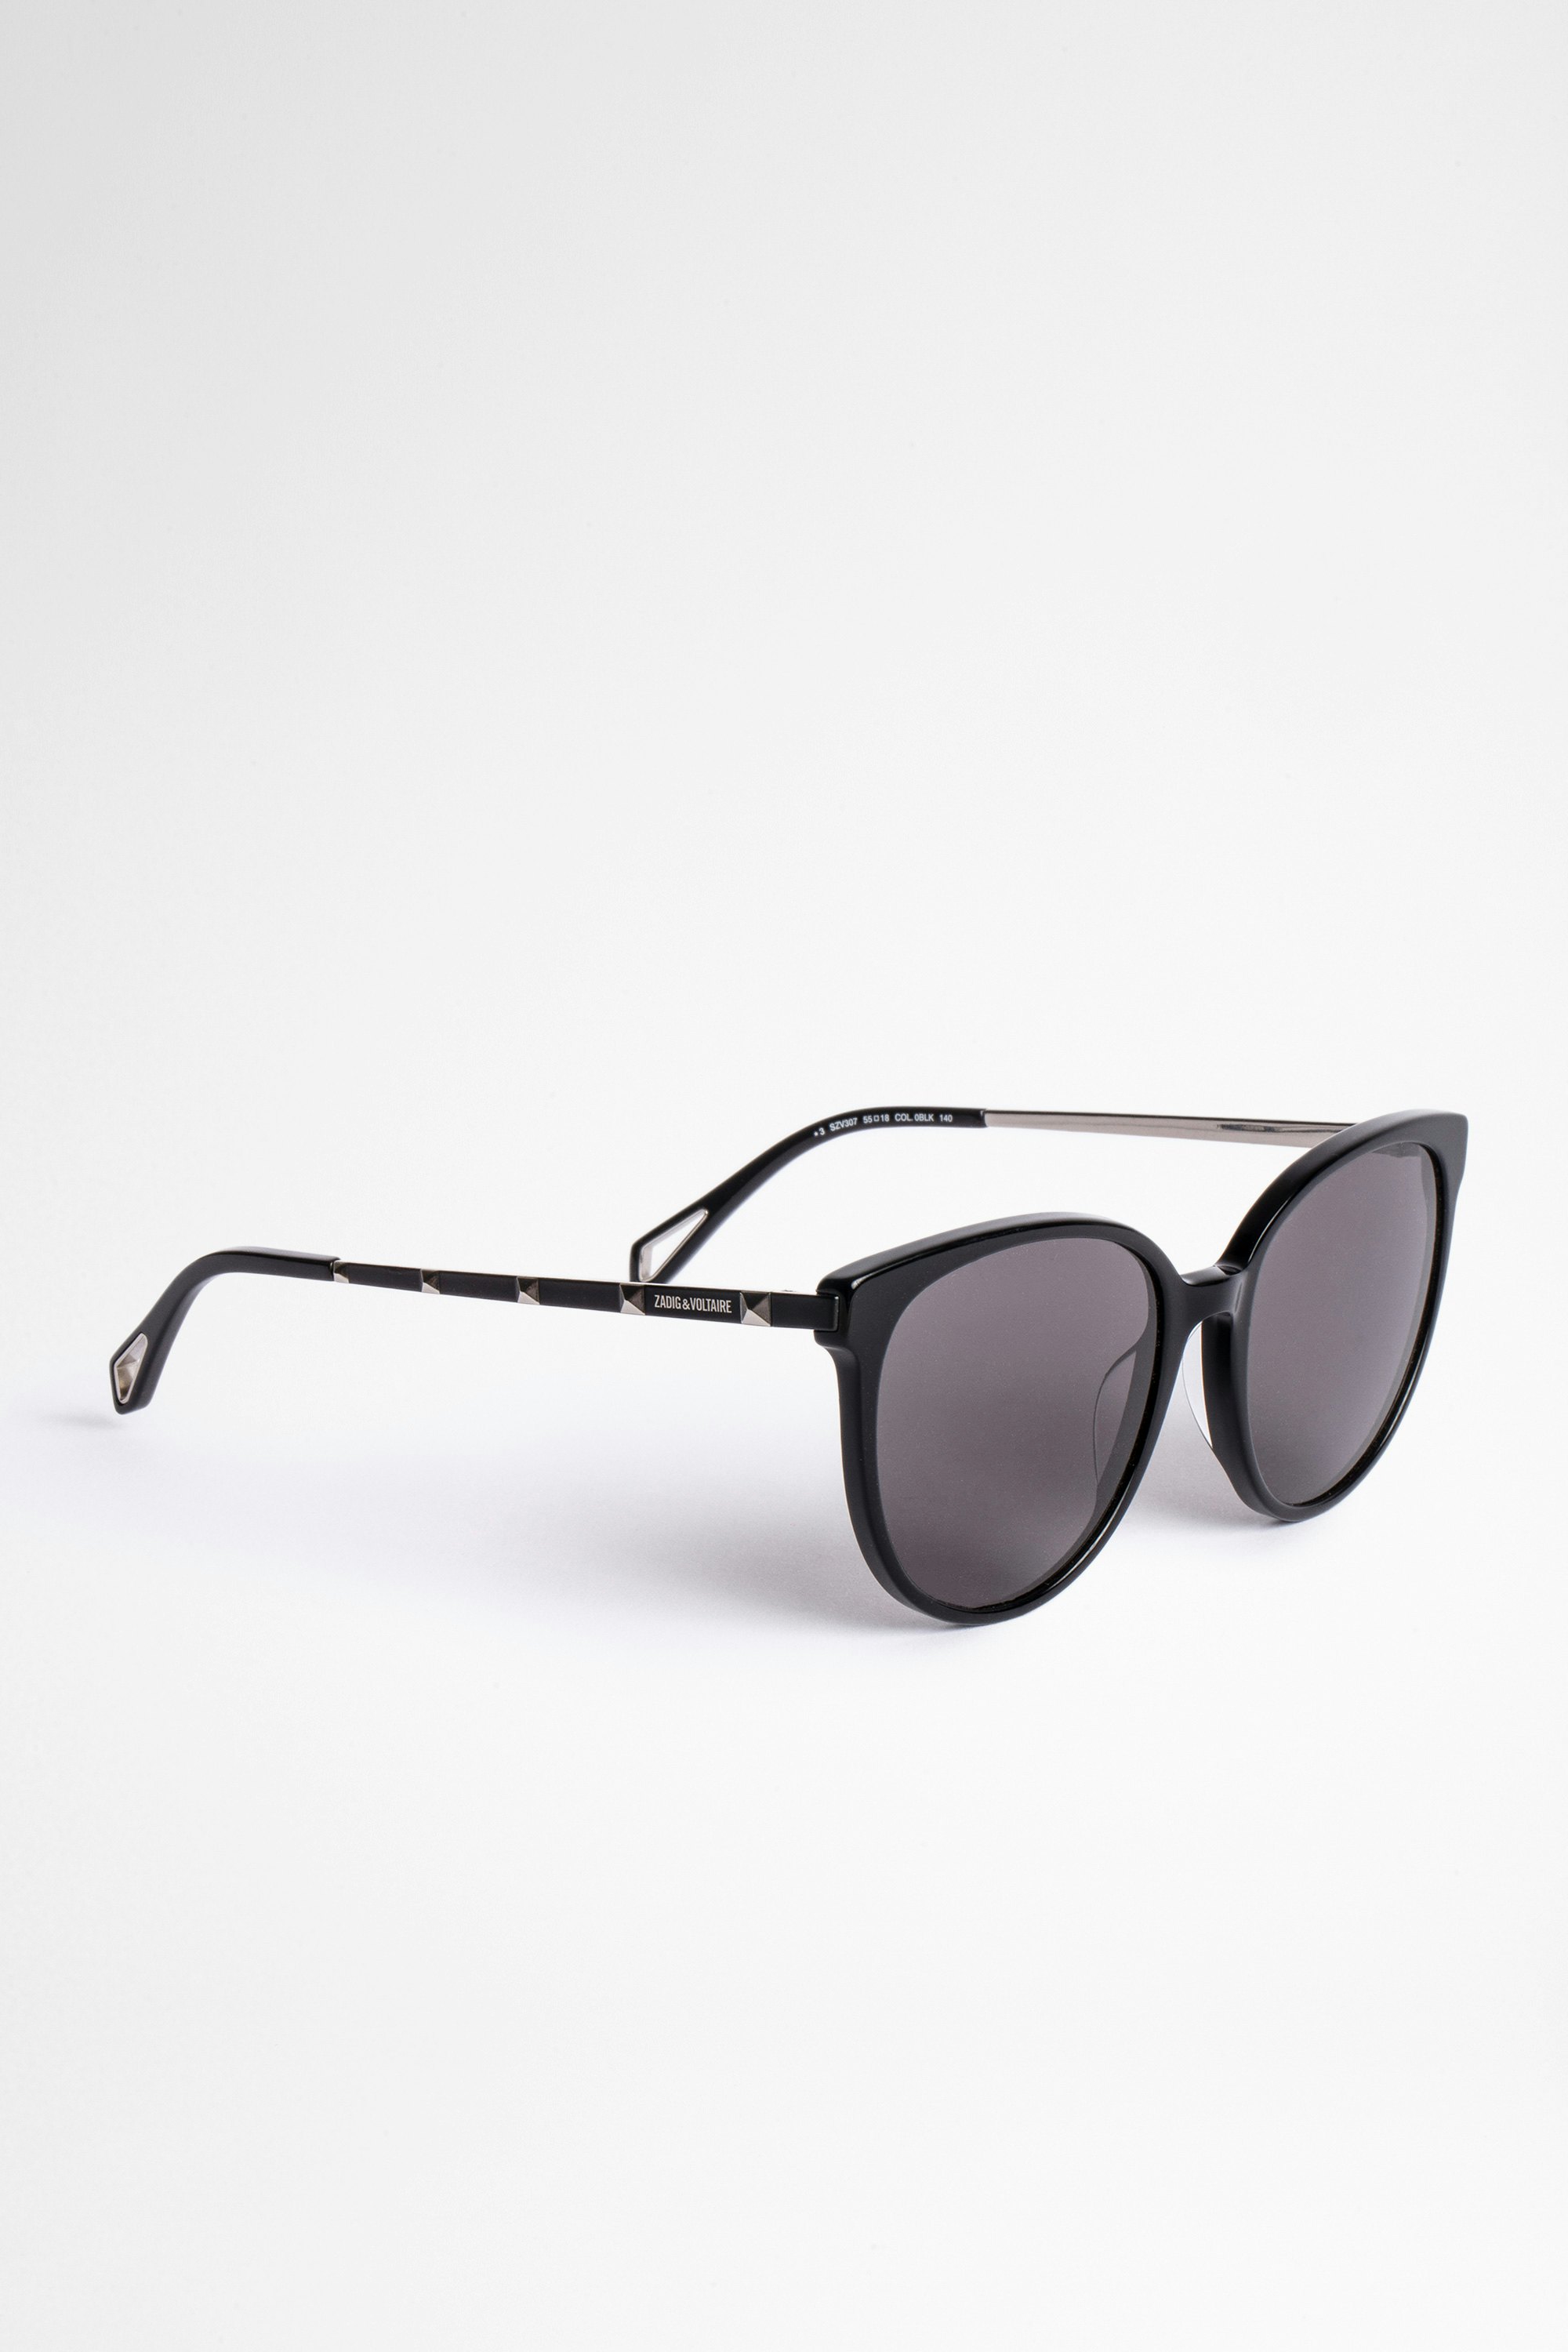 Studs サングラス Unisex bio-acetate sunglasses in black with tinted lenses